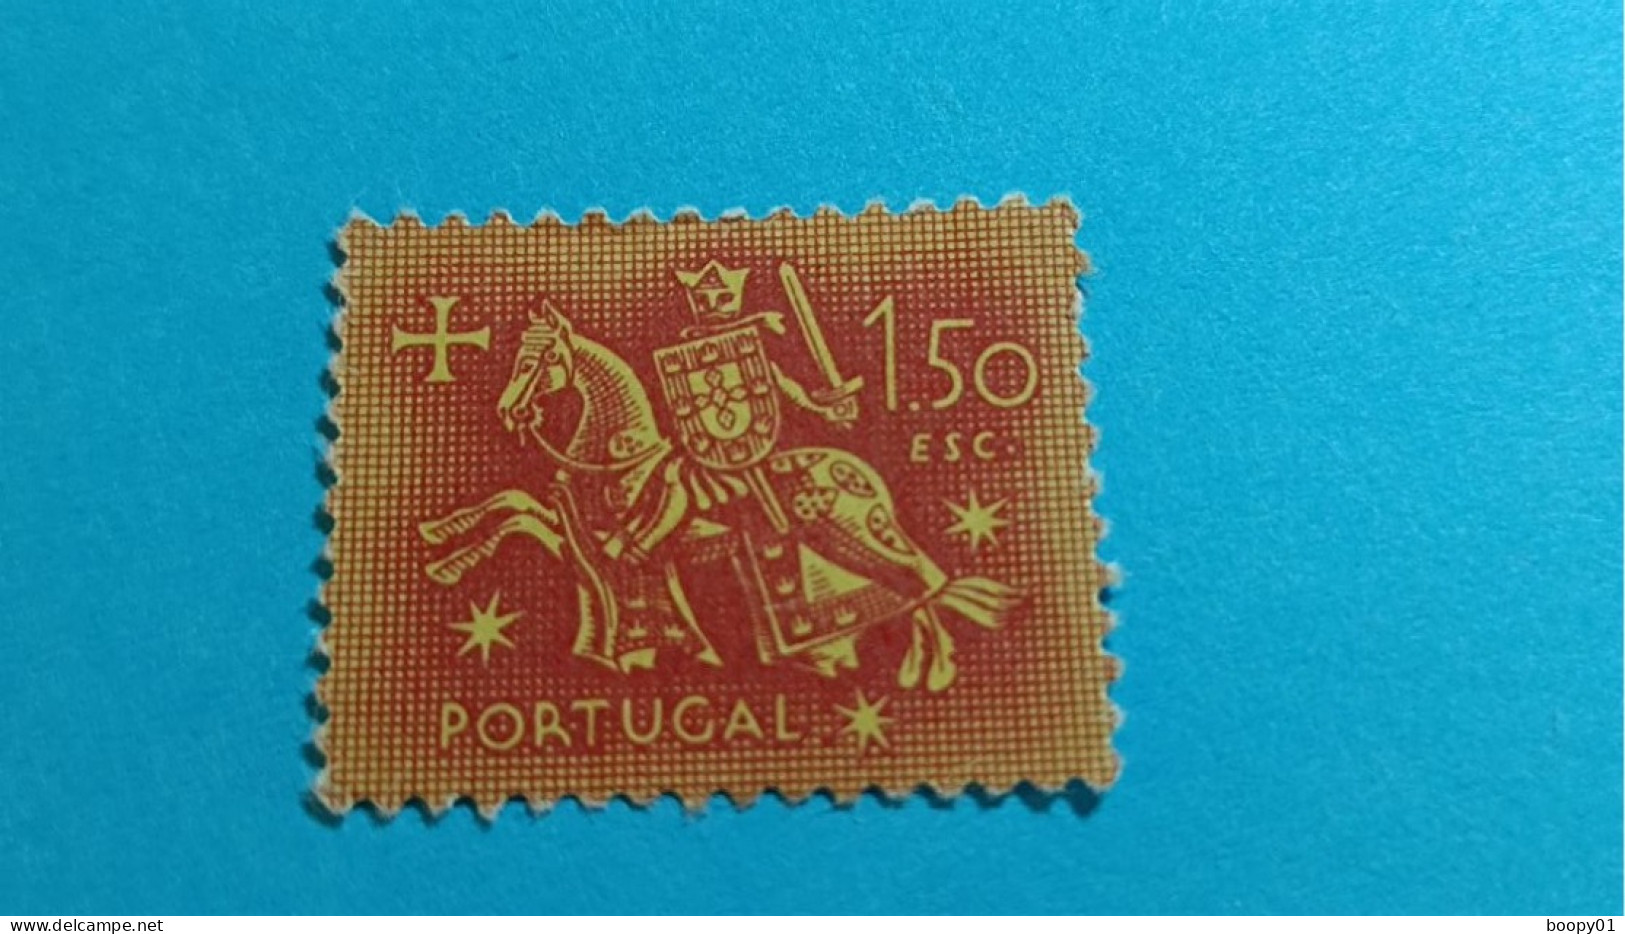 PORTUGAL - Timbre 1953 : Sceau équestre De Denis 1er De Portugal (Dinis Ou Diniz) - 1.50 Escudo - Nuevos